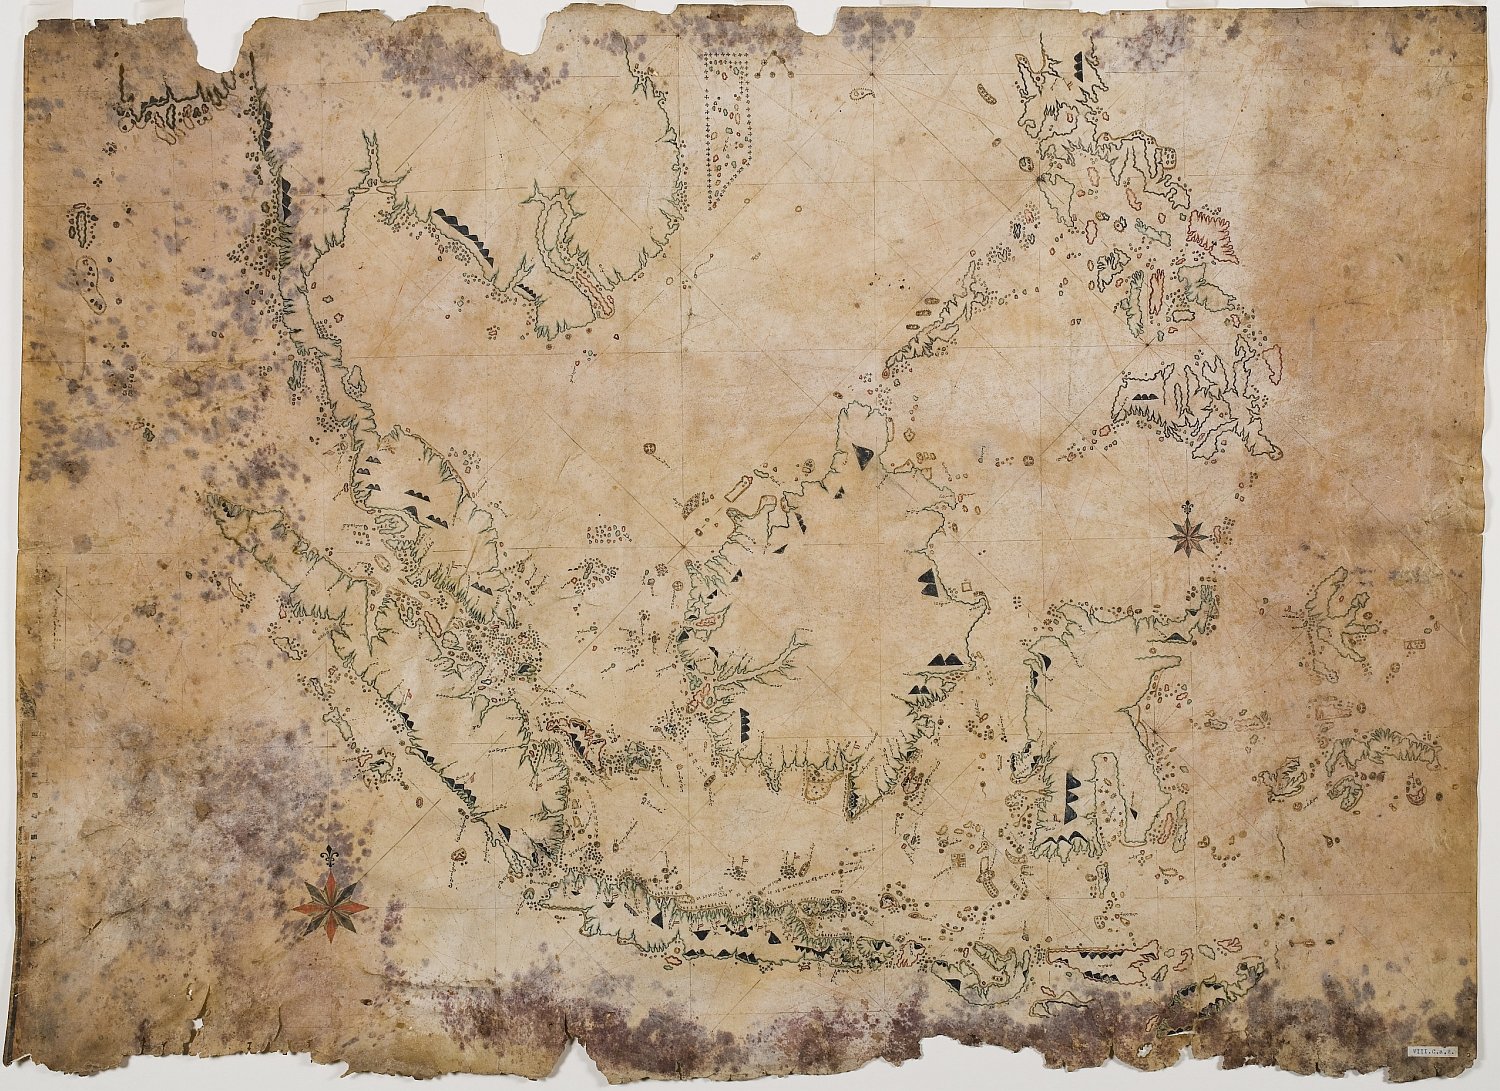 Boeginese zeekaart, 1816, topstuk uit de Bijzondere Collecties van de Universiteitsbibliotheek Utrecht